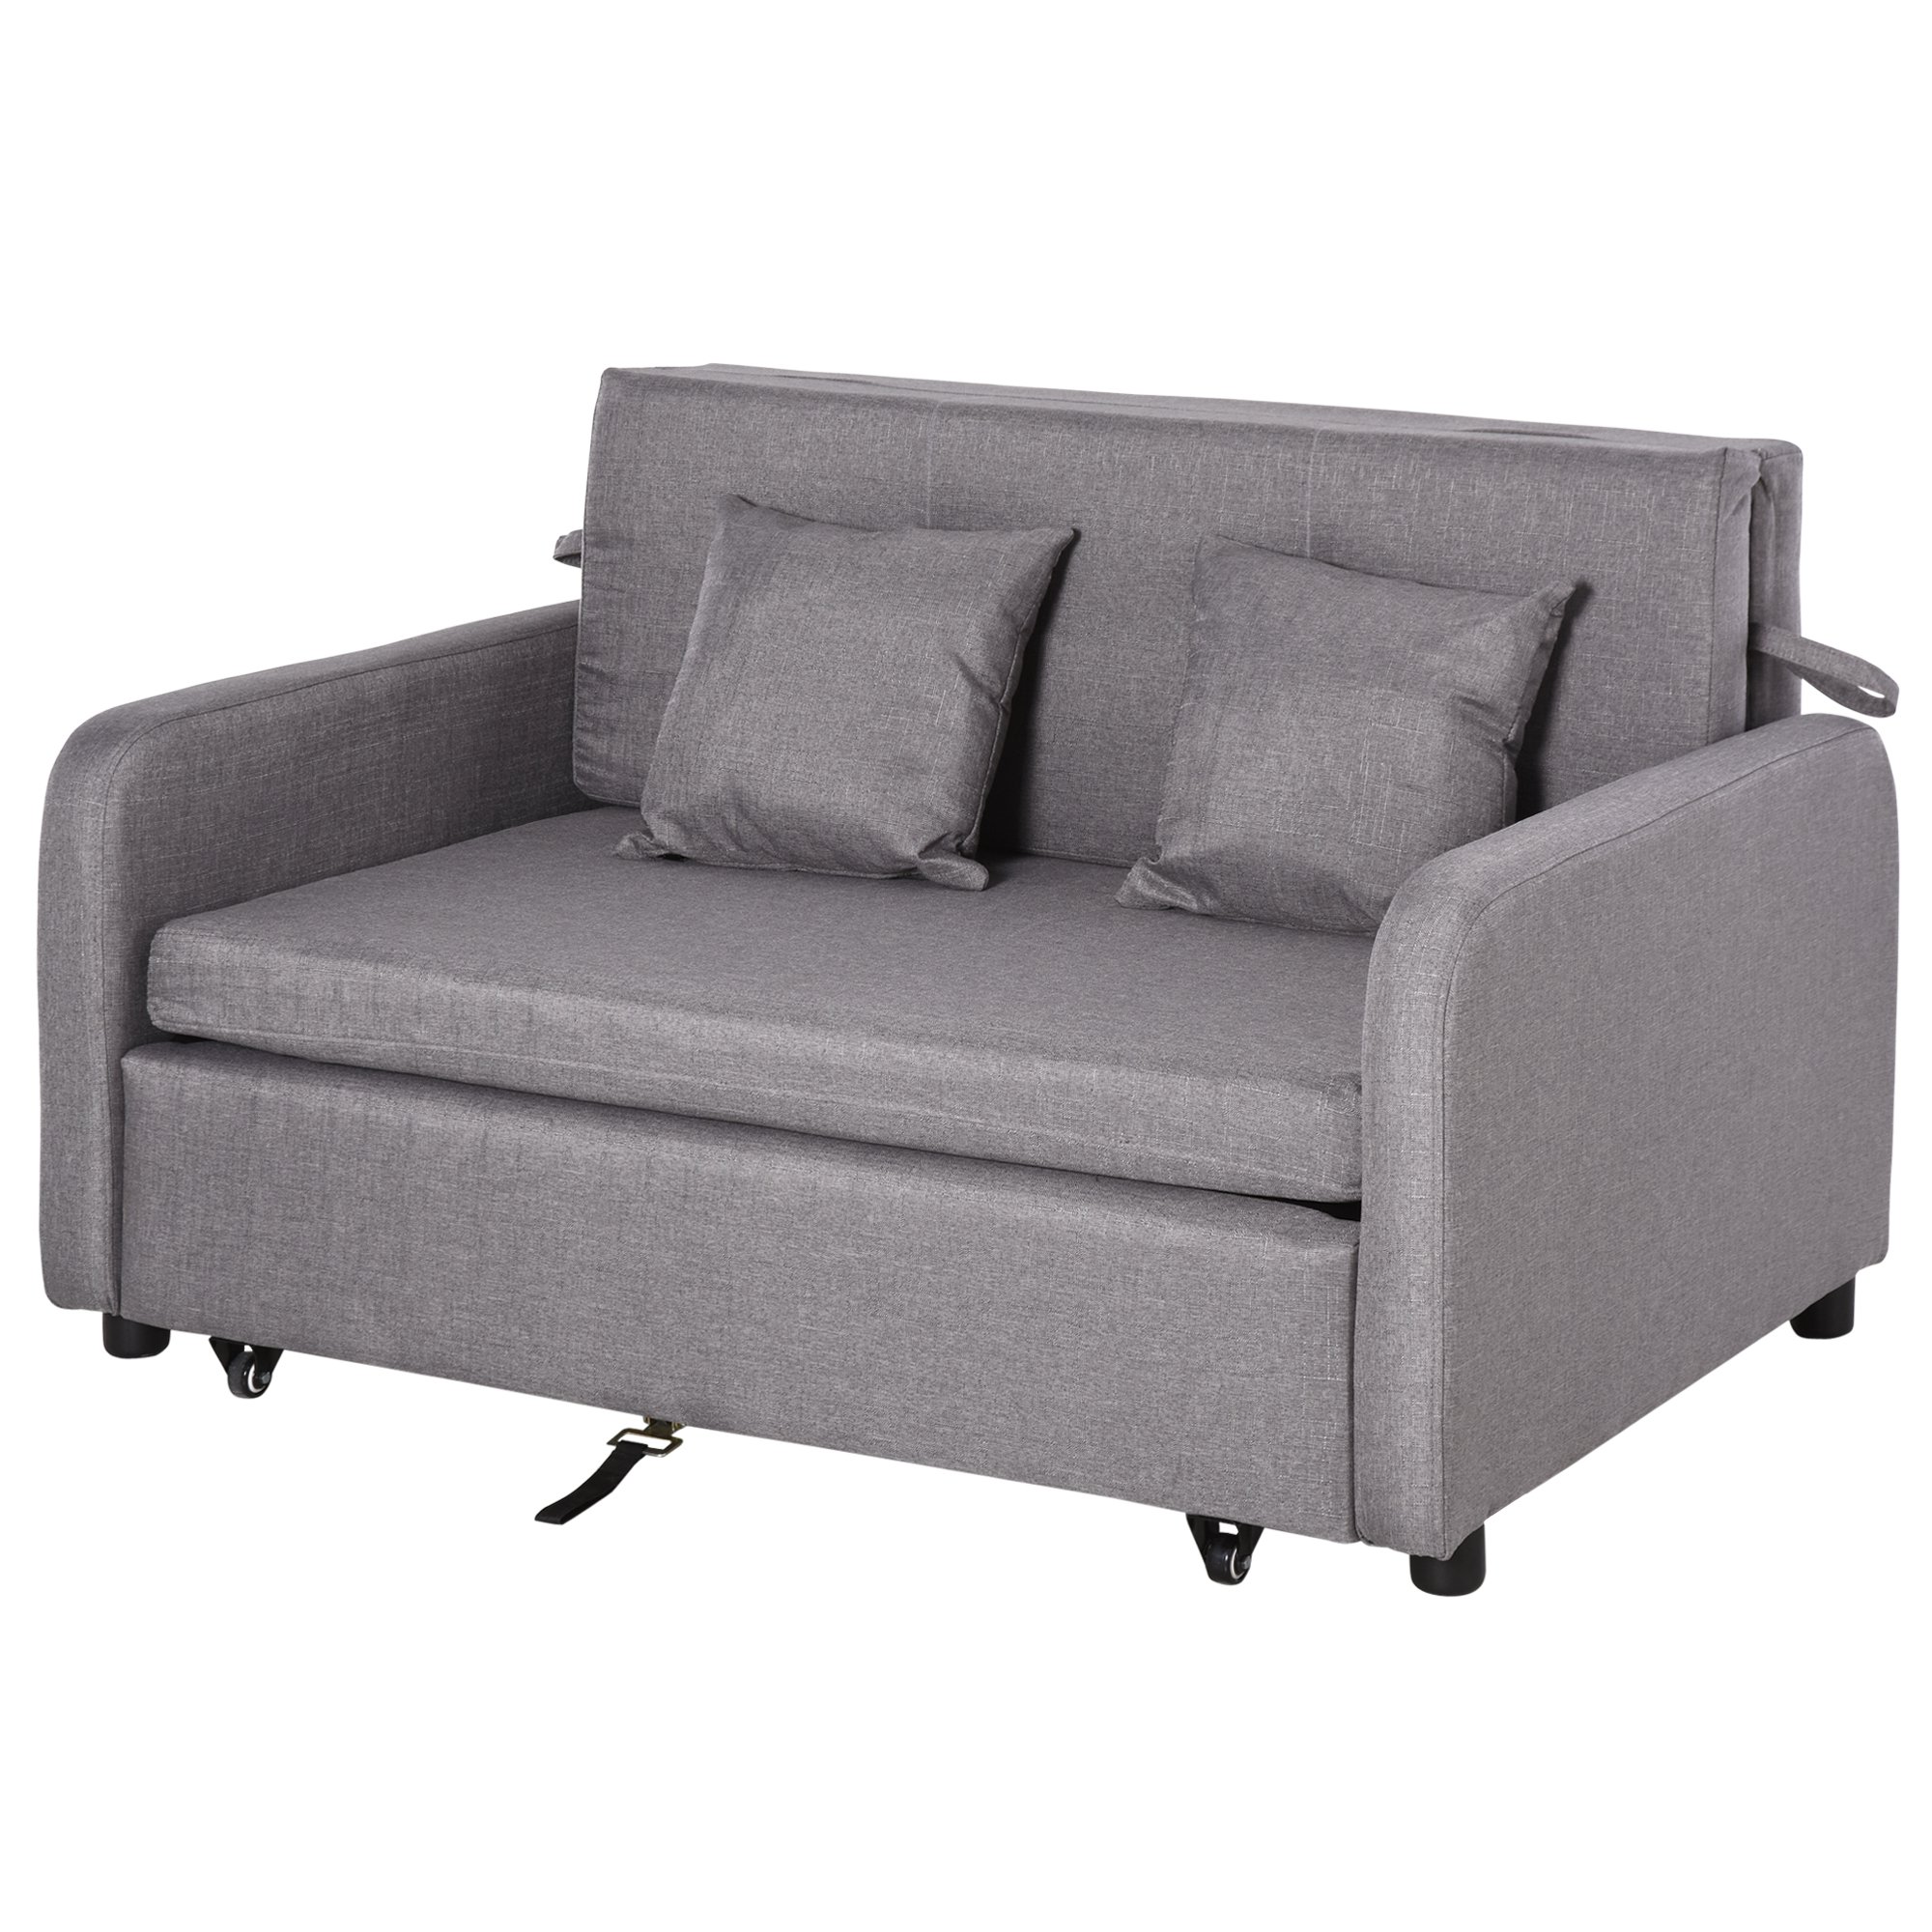 Homcom 2 σε 1 καναπές-κρεβάτι με αποθηκευτικό χώρο και μοντέρνο σχεδιασμό σε γκρι ύφασμα